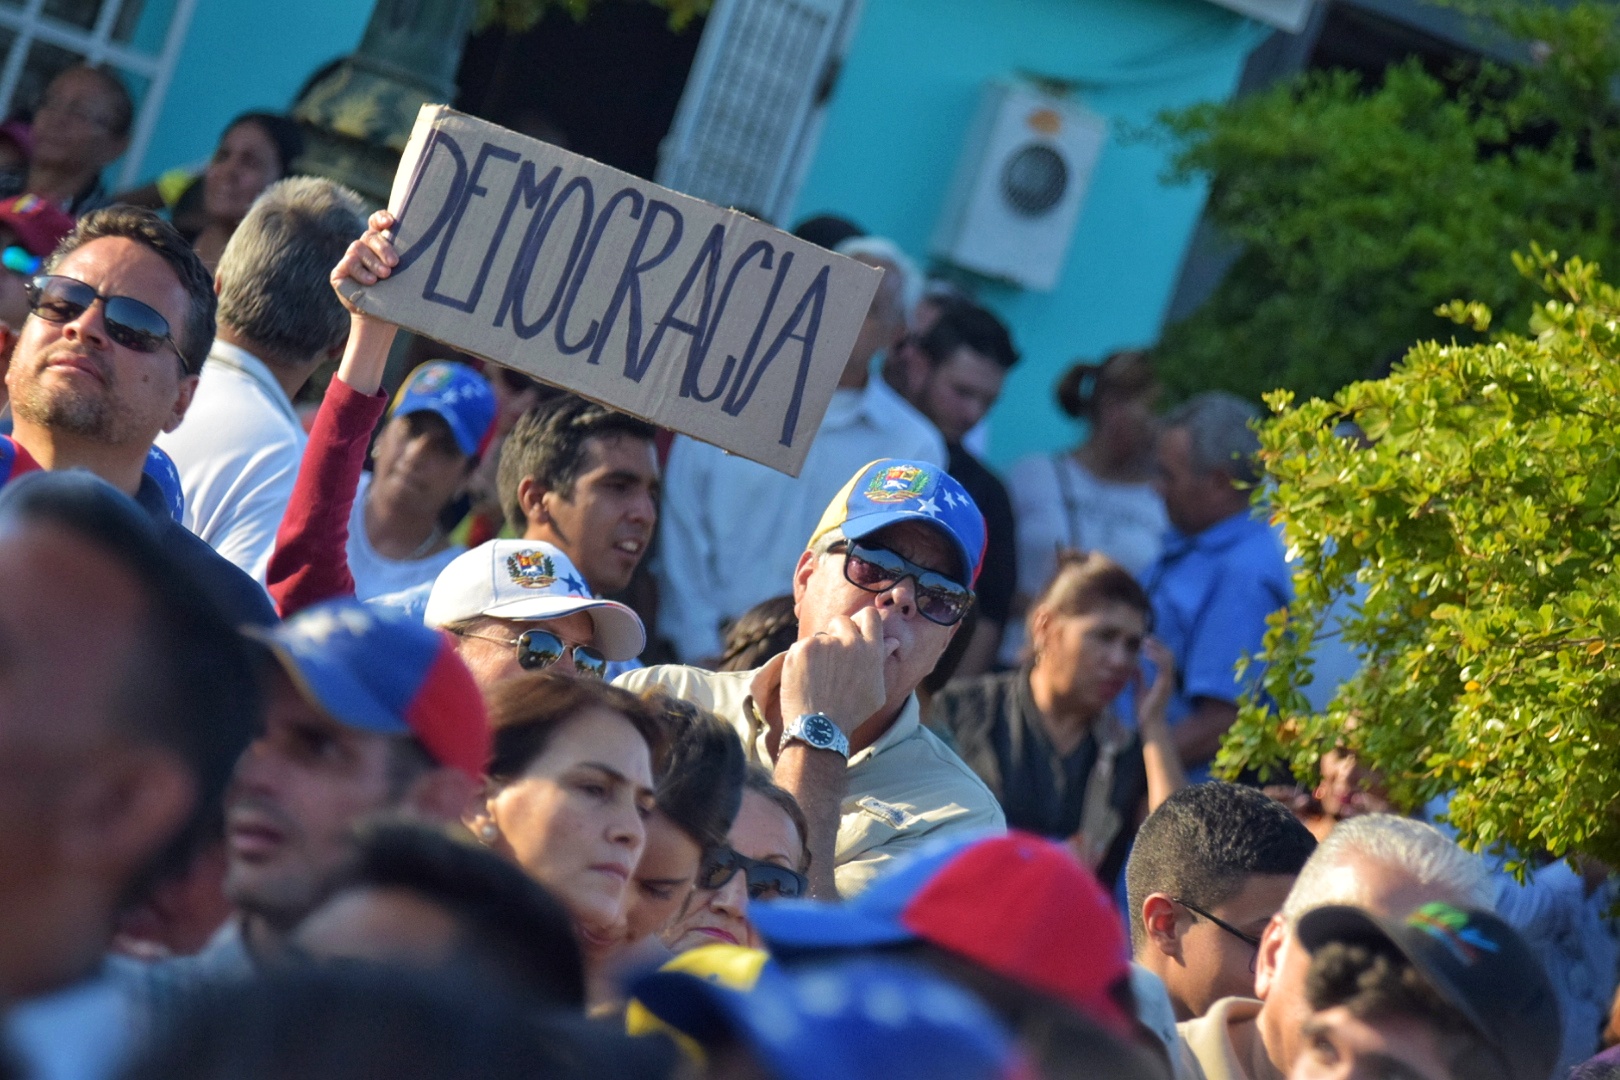 Armando Armas: El liderazgo de Brasil será determinante para la transición en Venezuela